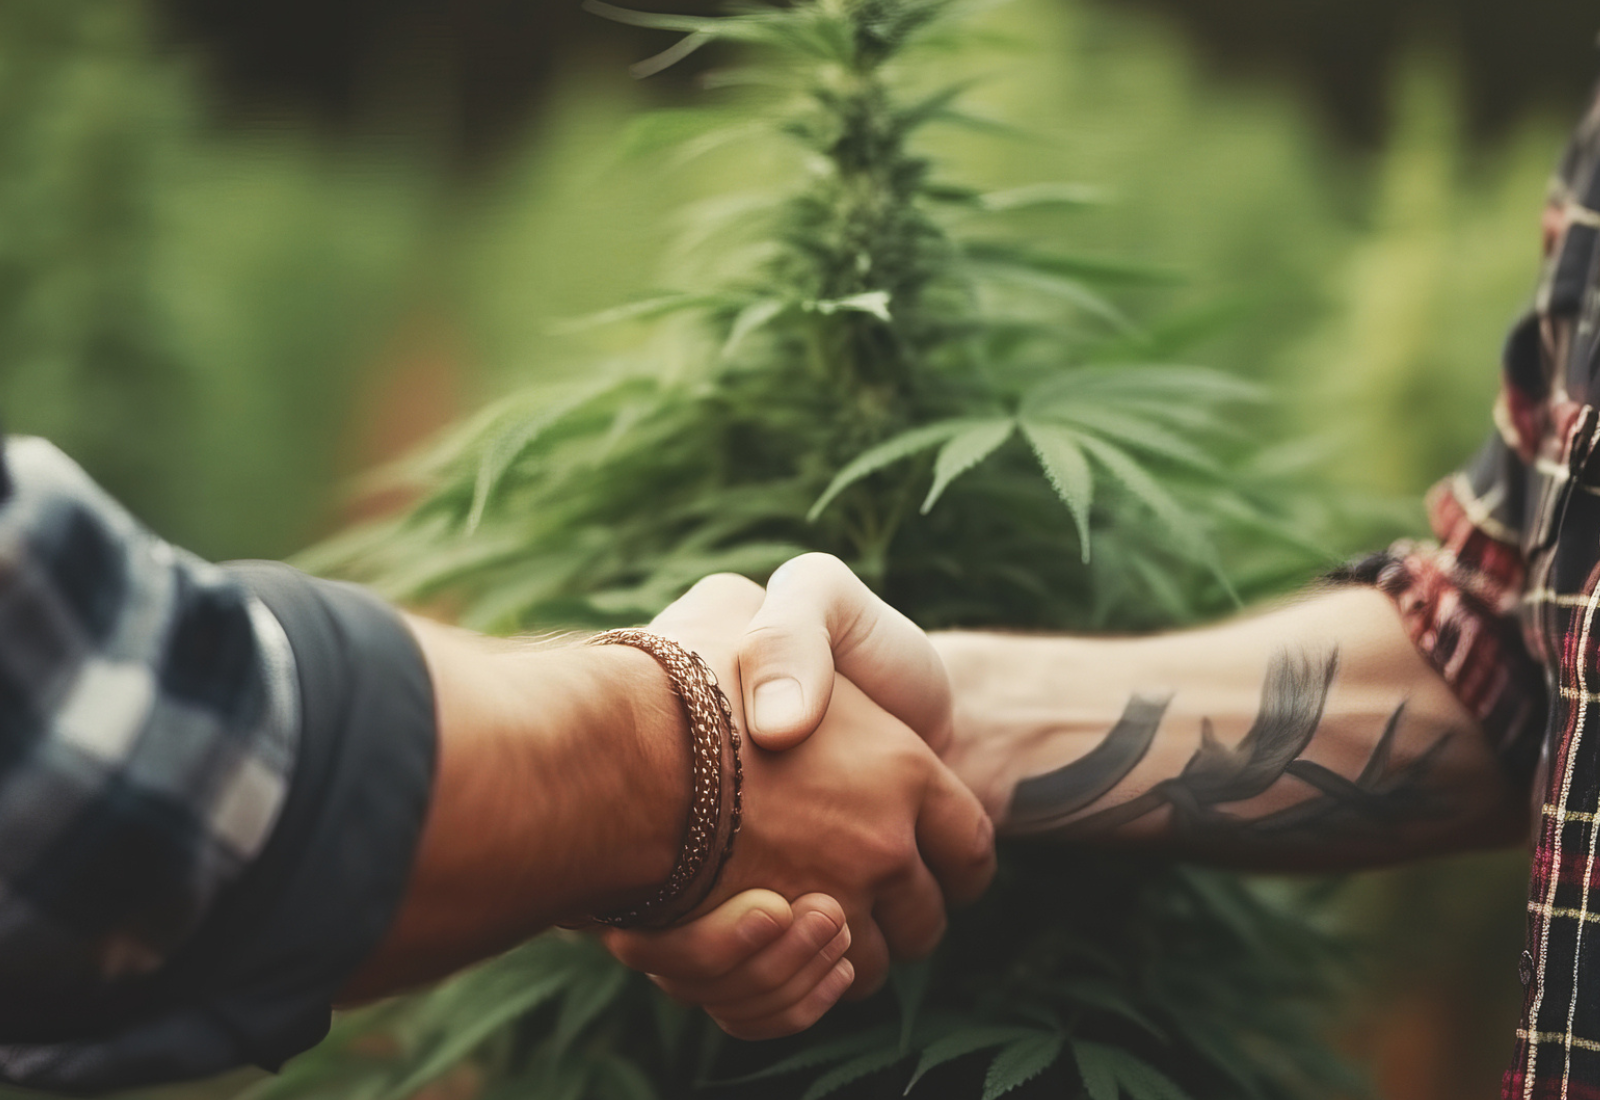 Nehéz idők járnak: a Cannabis Joint Ventures segíthet